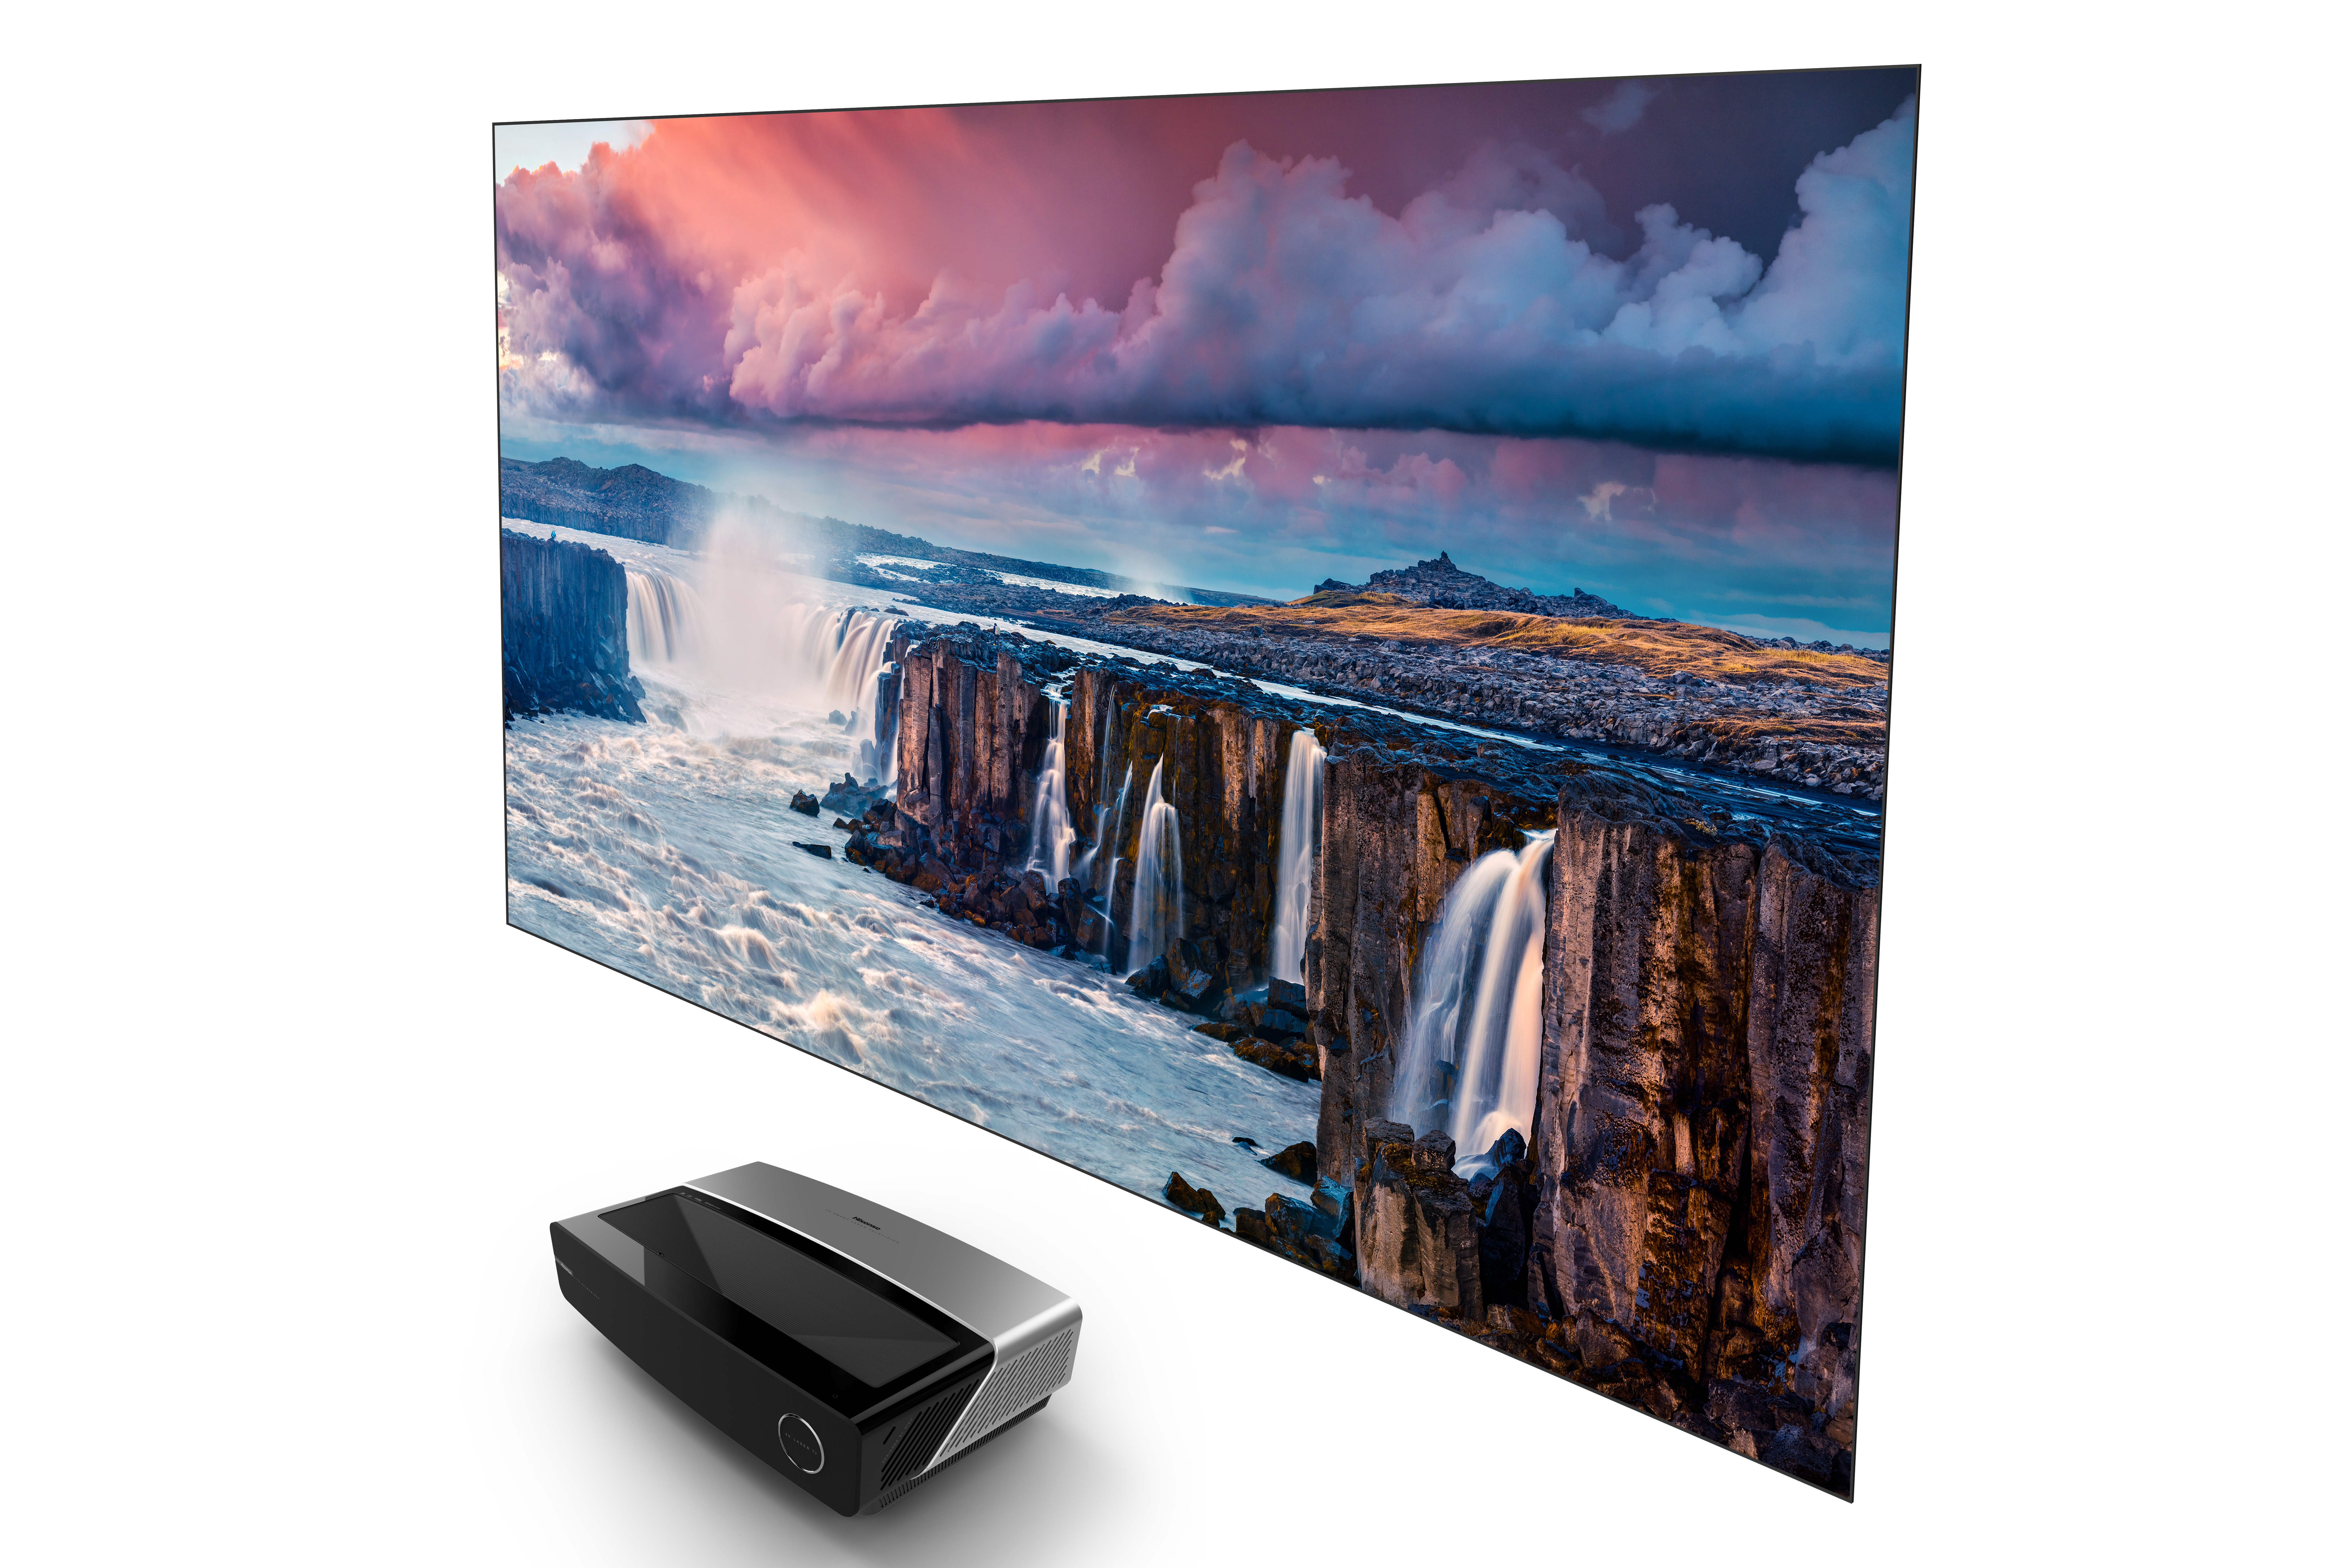 Hisense lanza en IFA 2019 VIDAA U4 y una completa gama de televisores